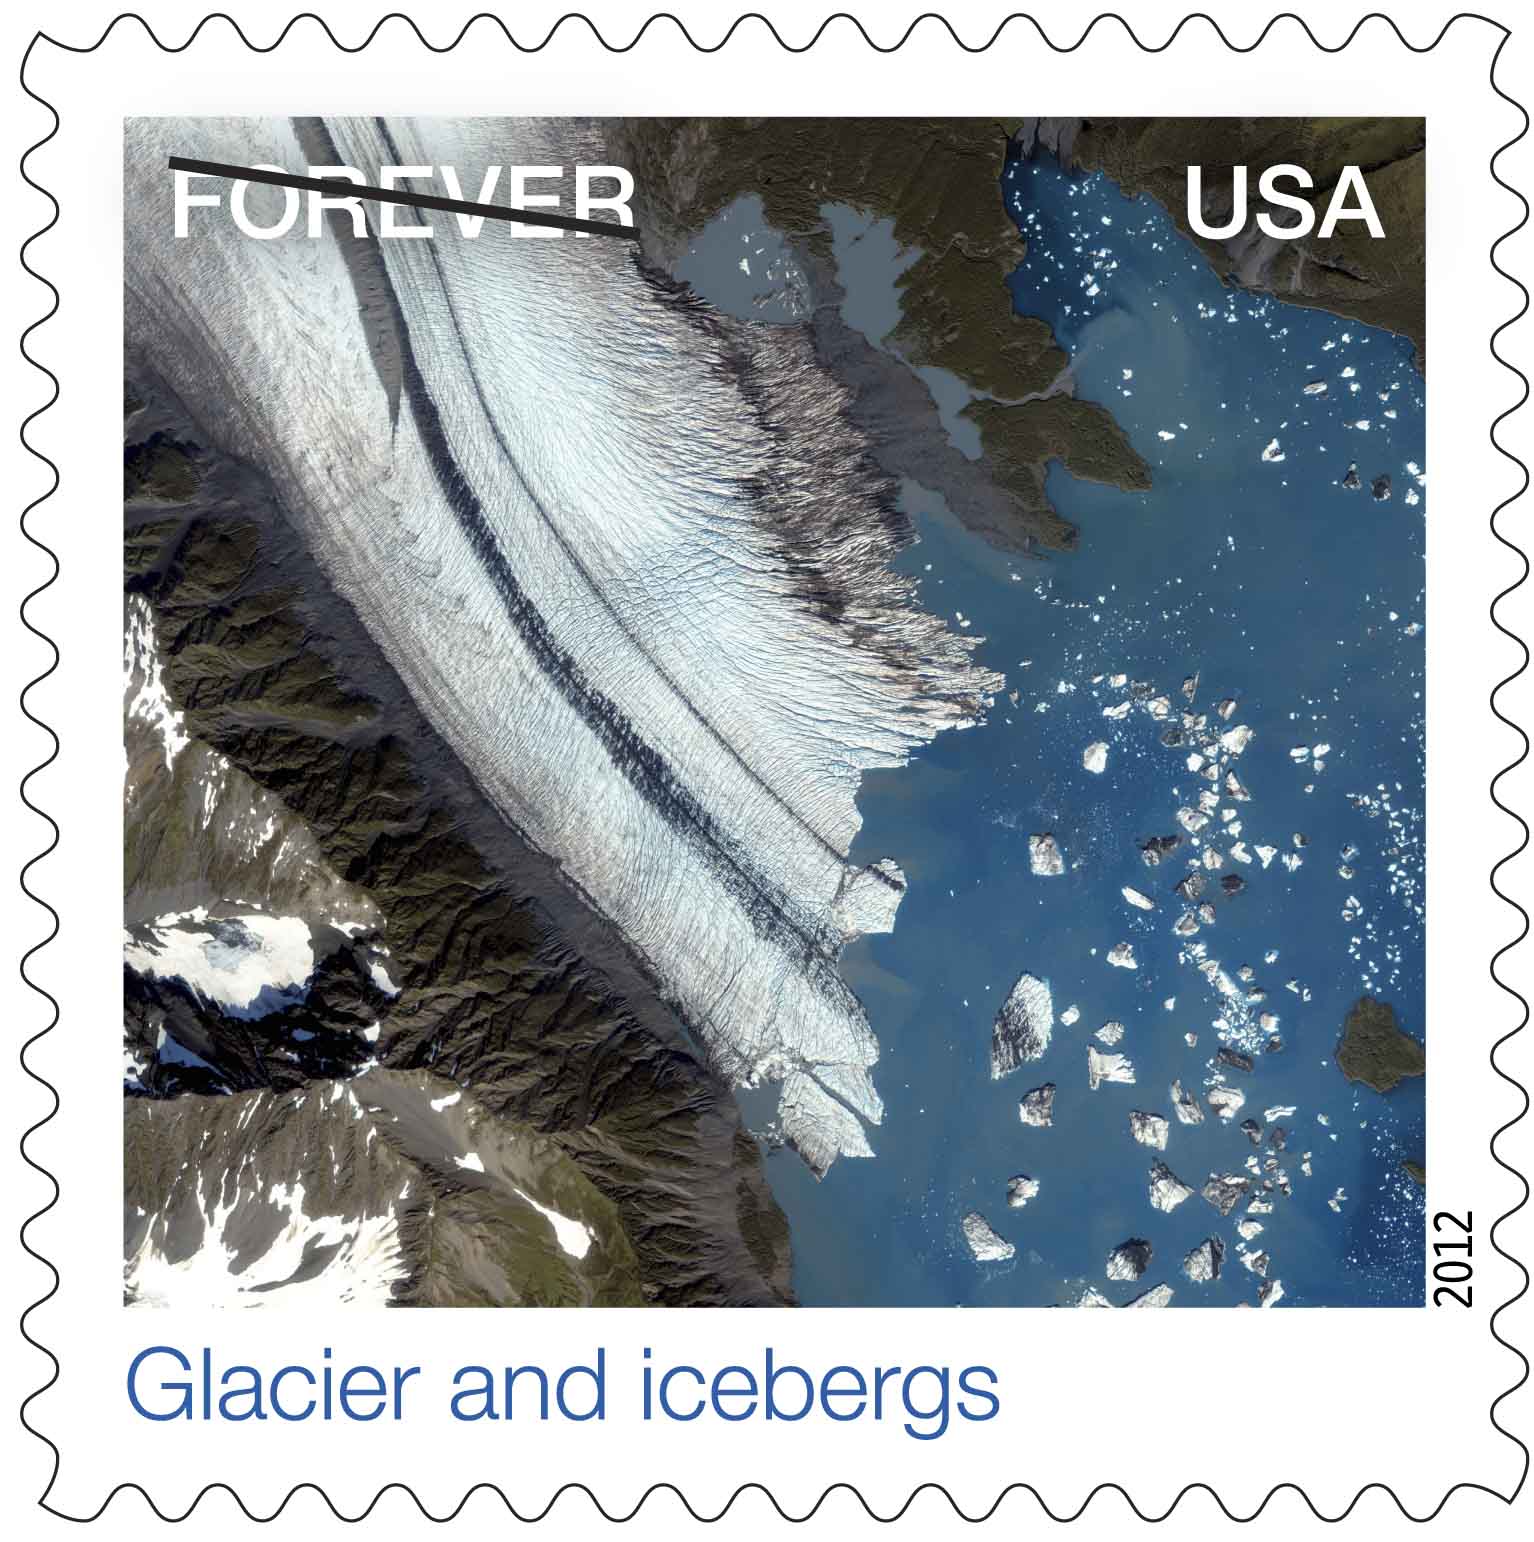 Bear Glacier USPS stamp